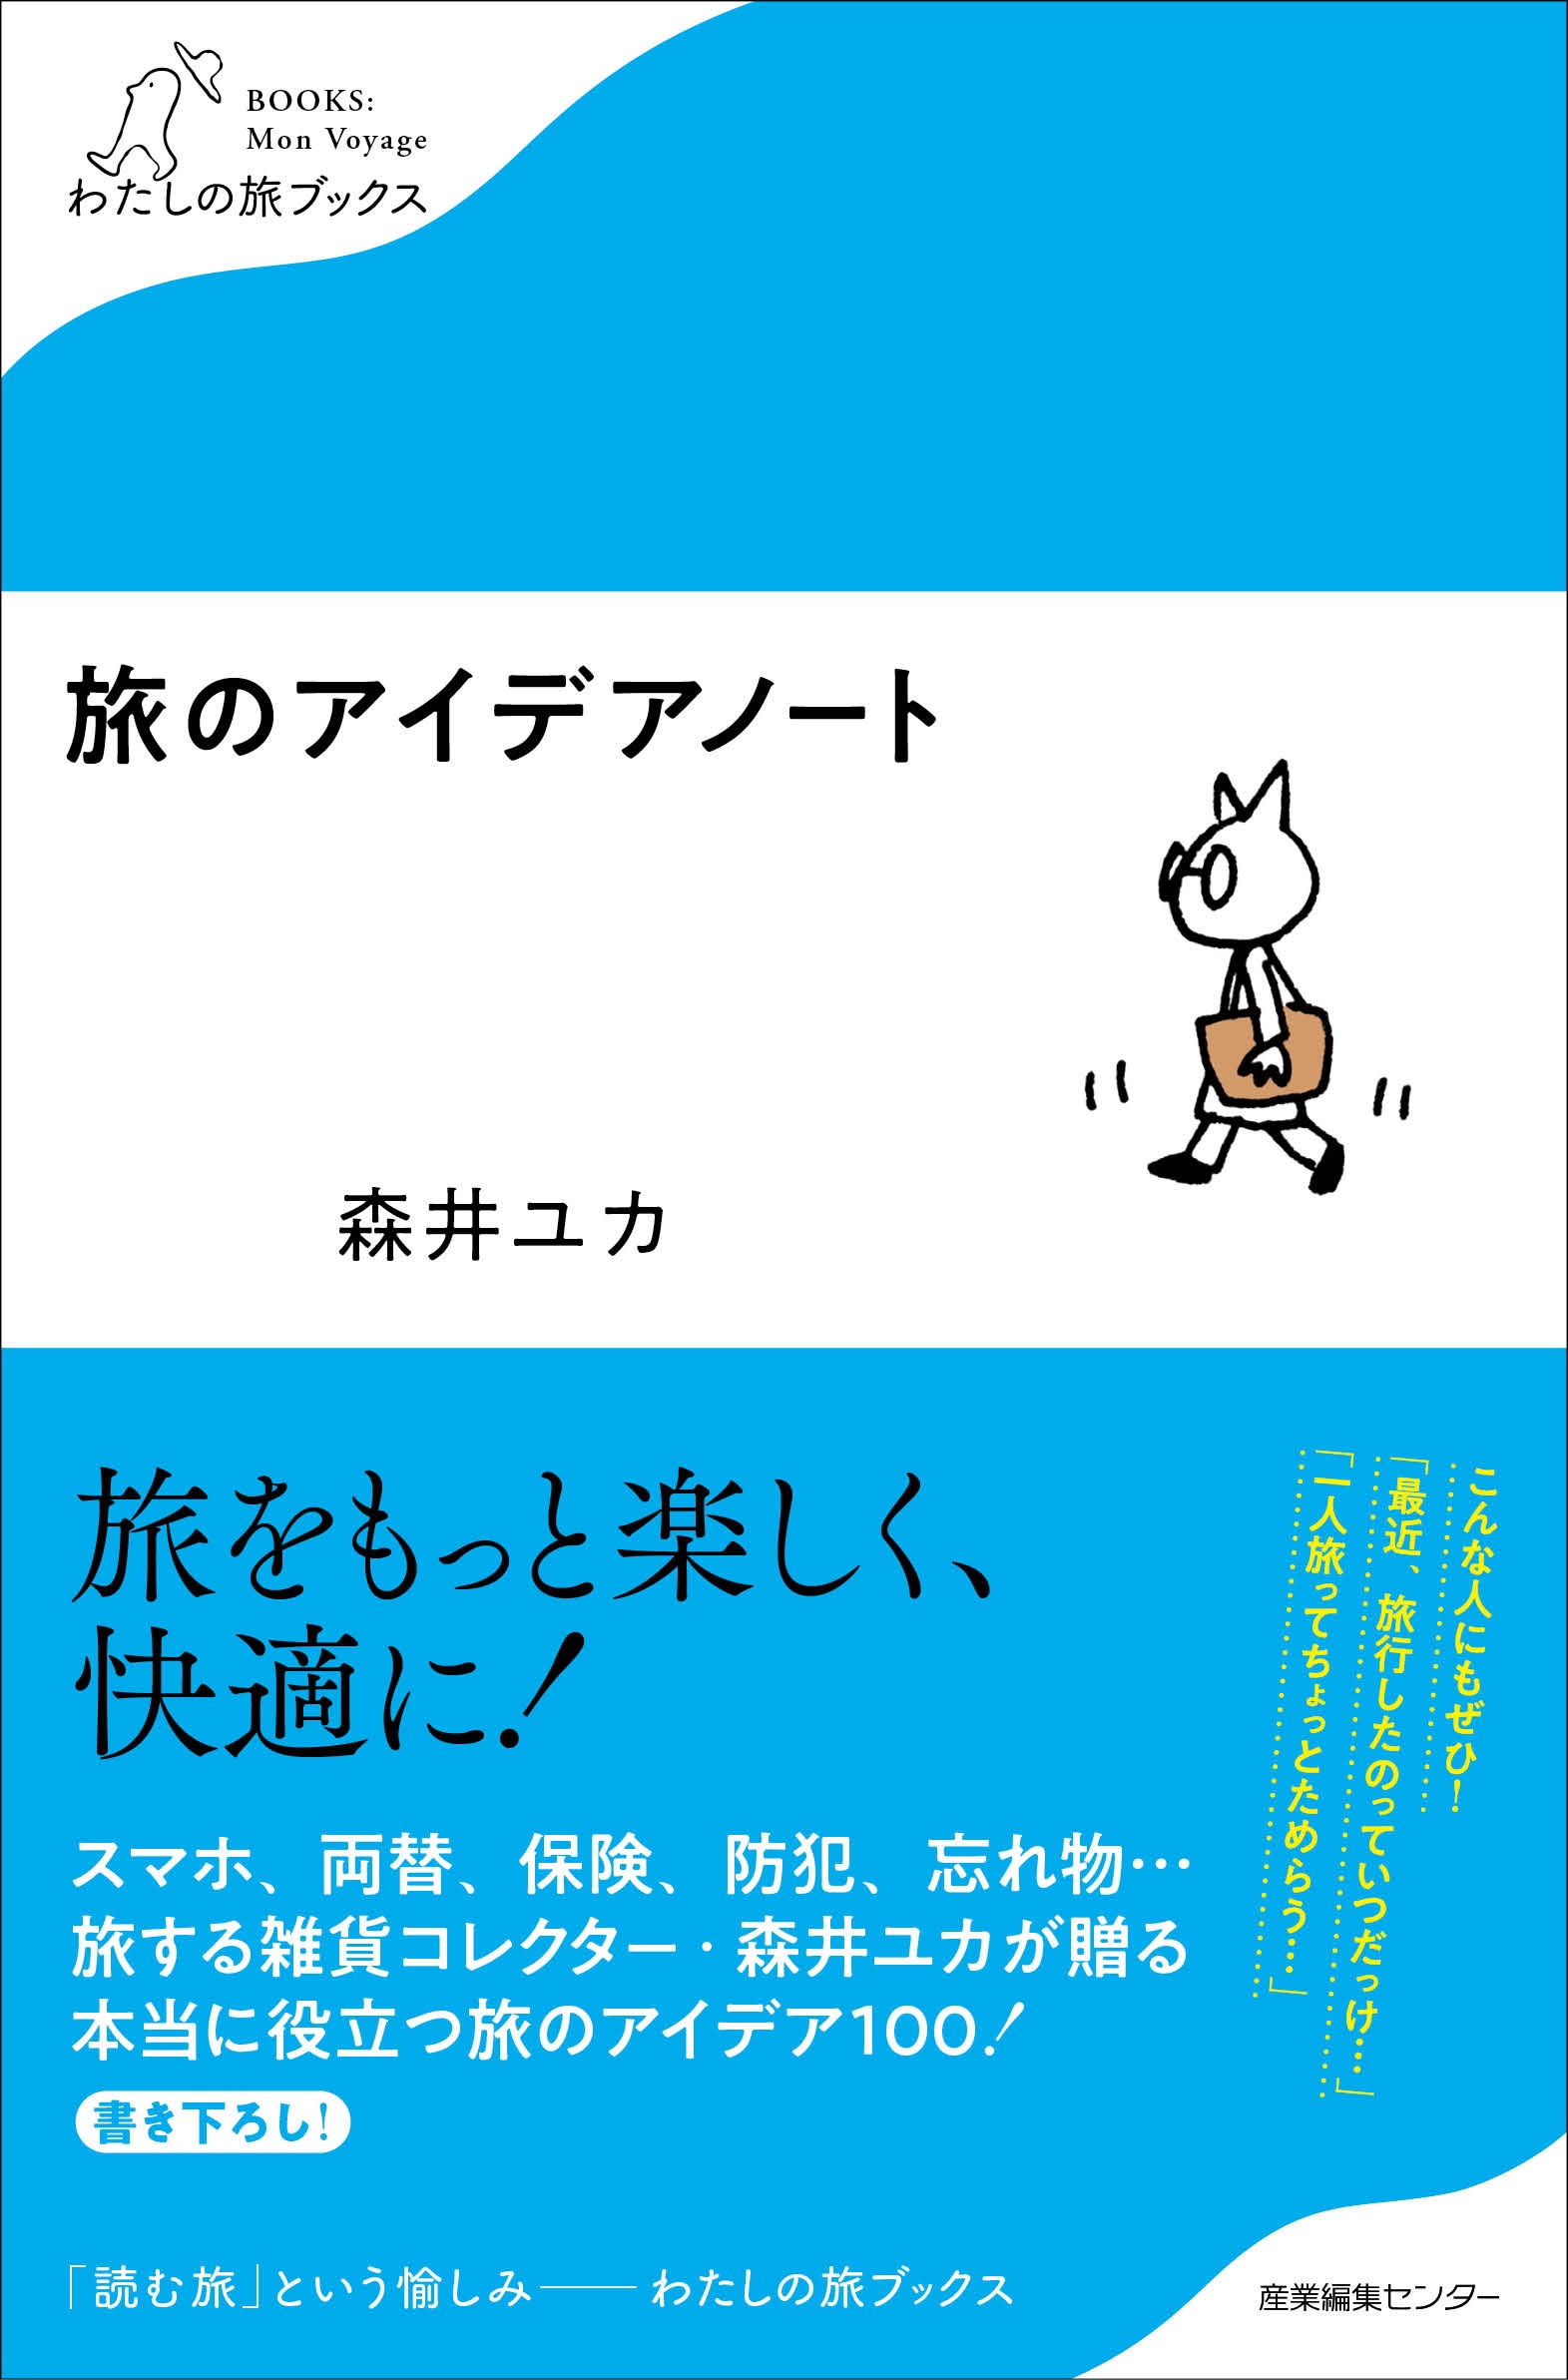 森井ユカさんの書籍「旅と雑貨とデザインと」